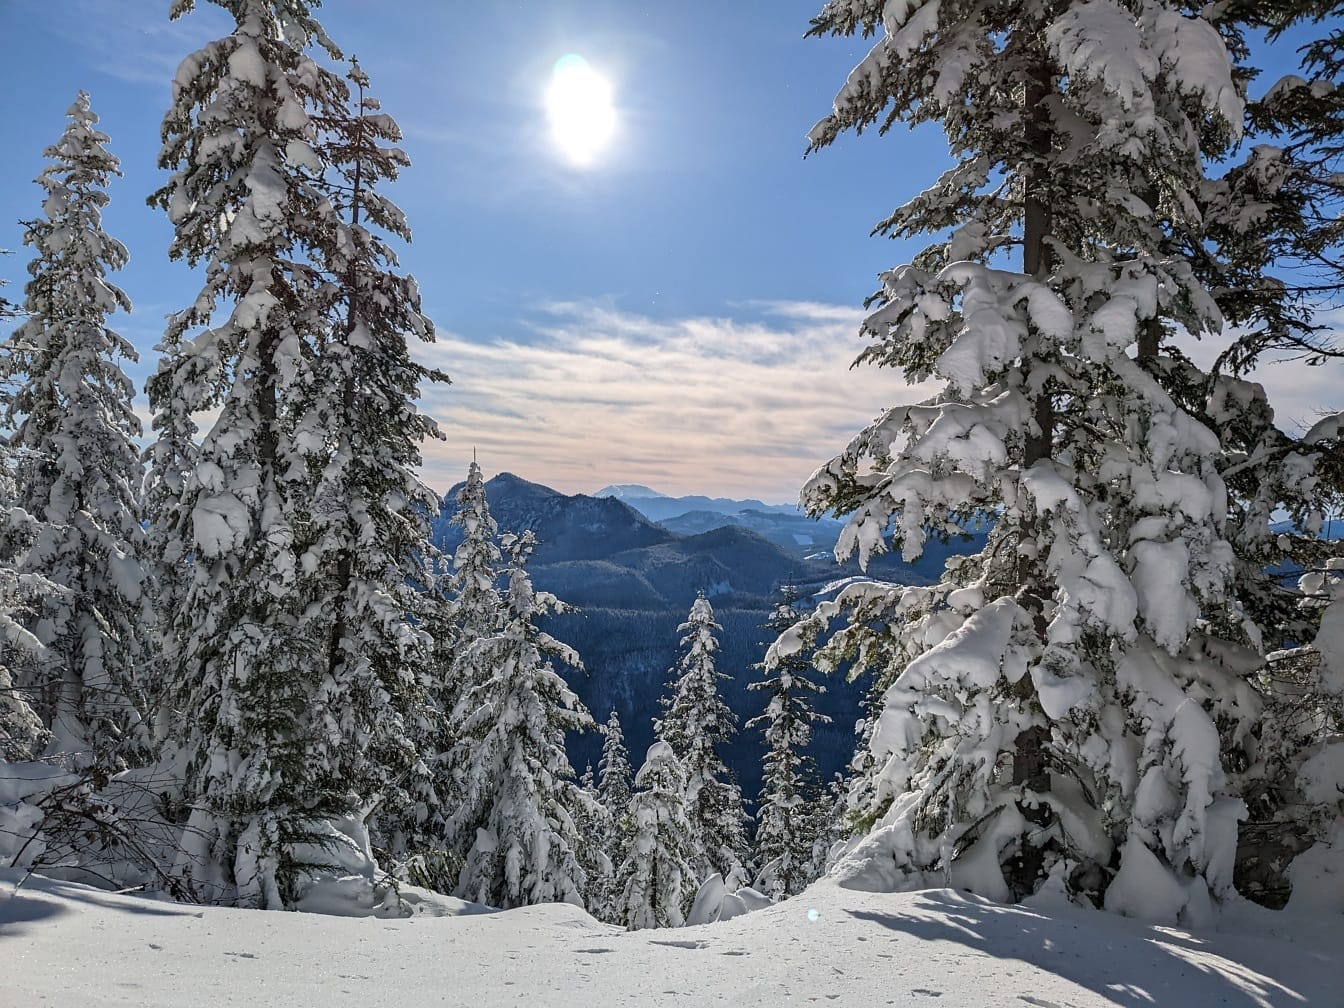 Mit Schnee bedeckte Kiefern mit Panorama des Tals im Hintergrund im Winter